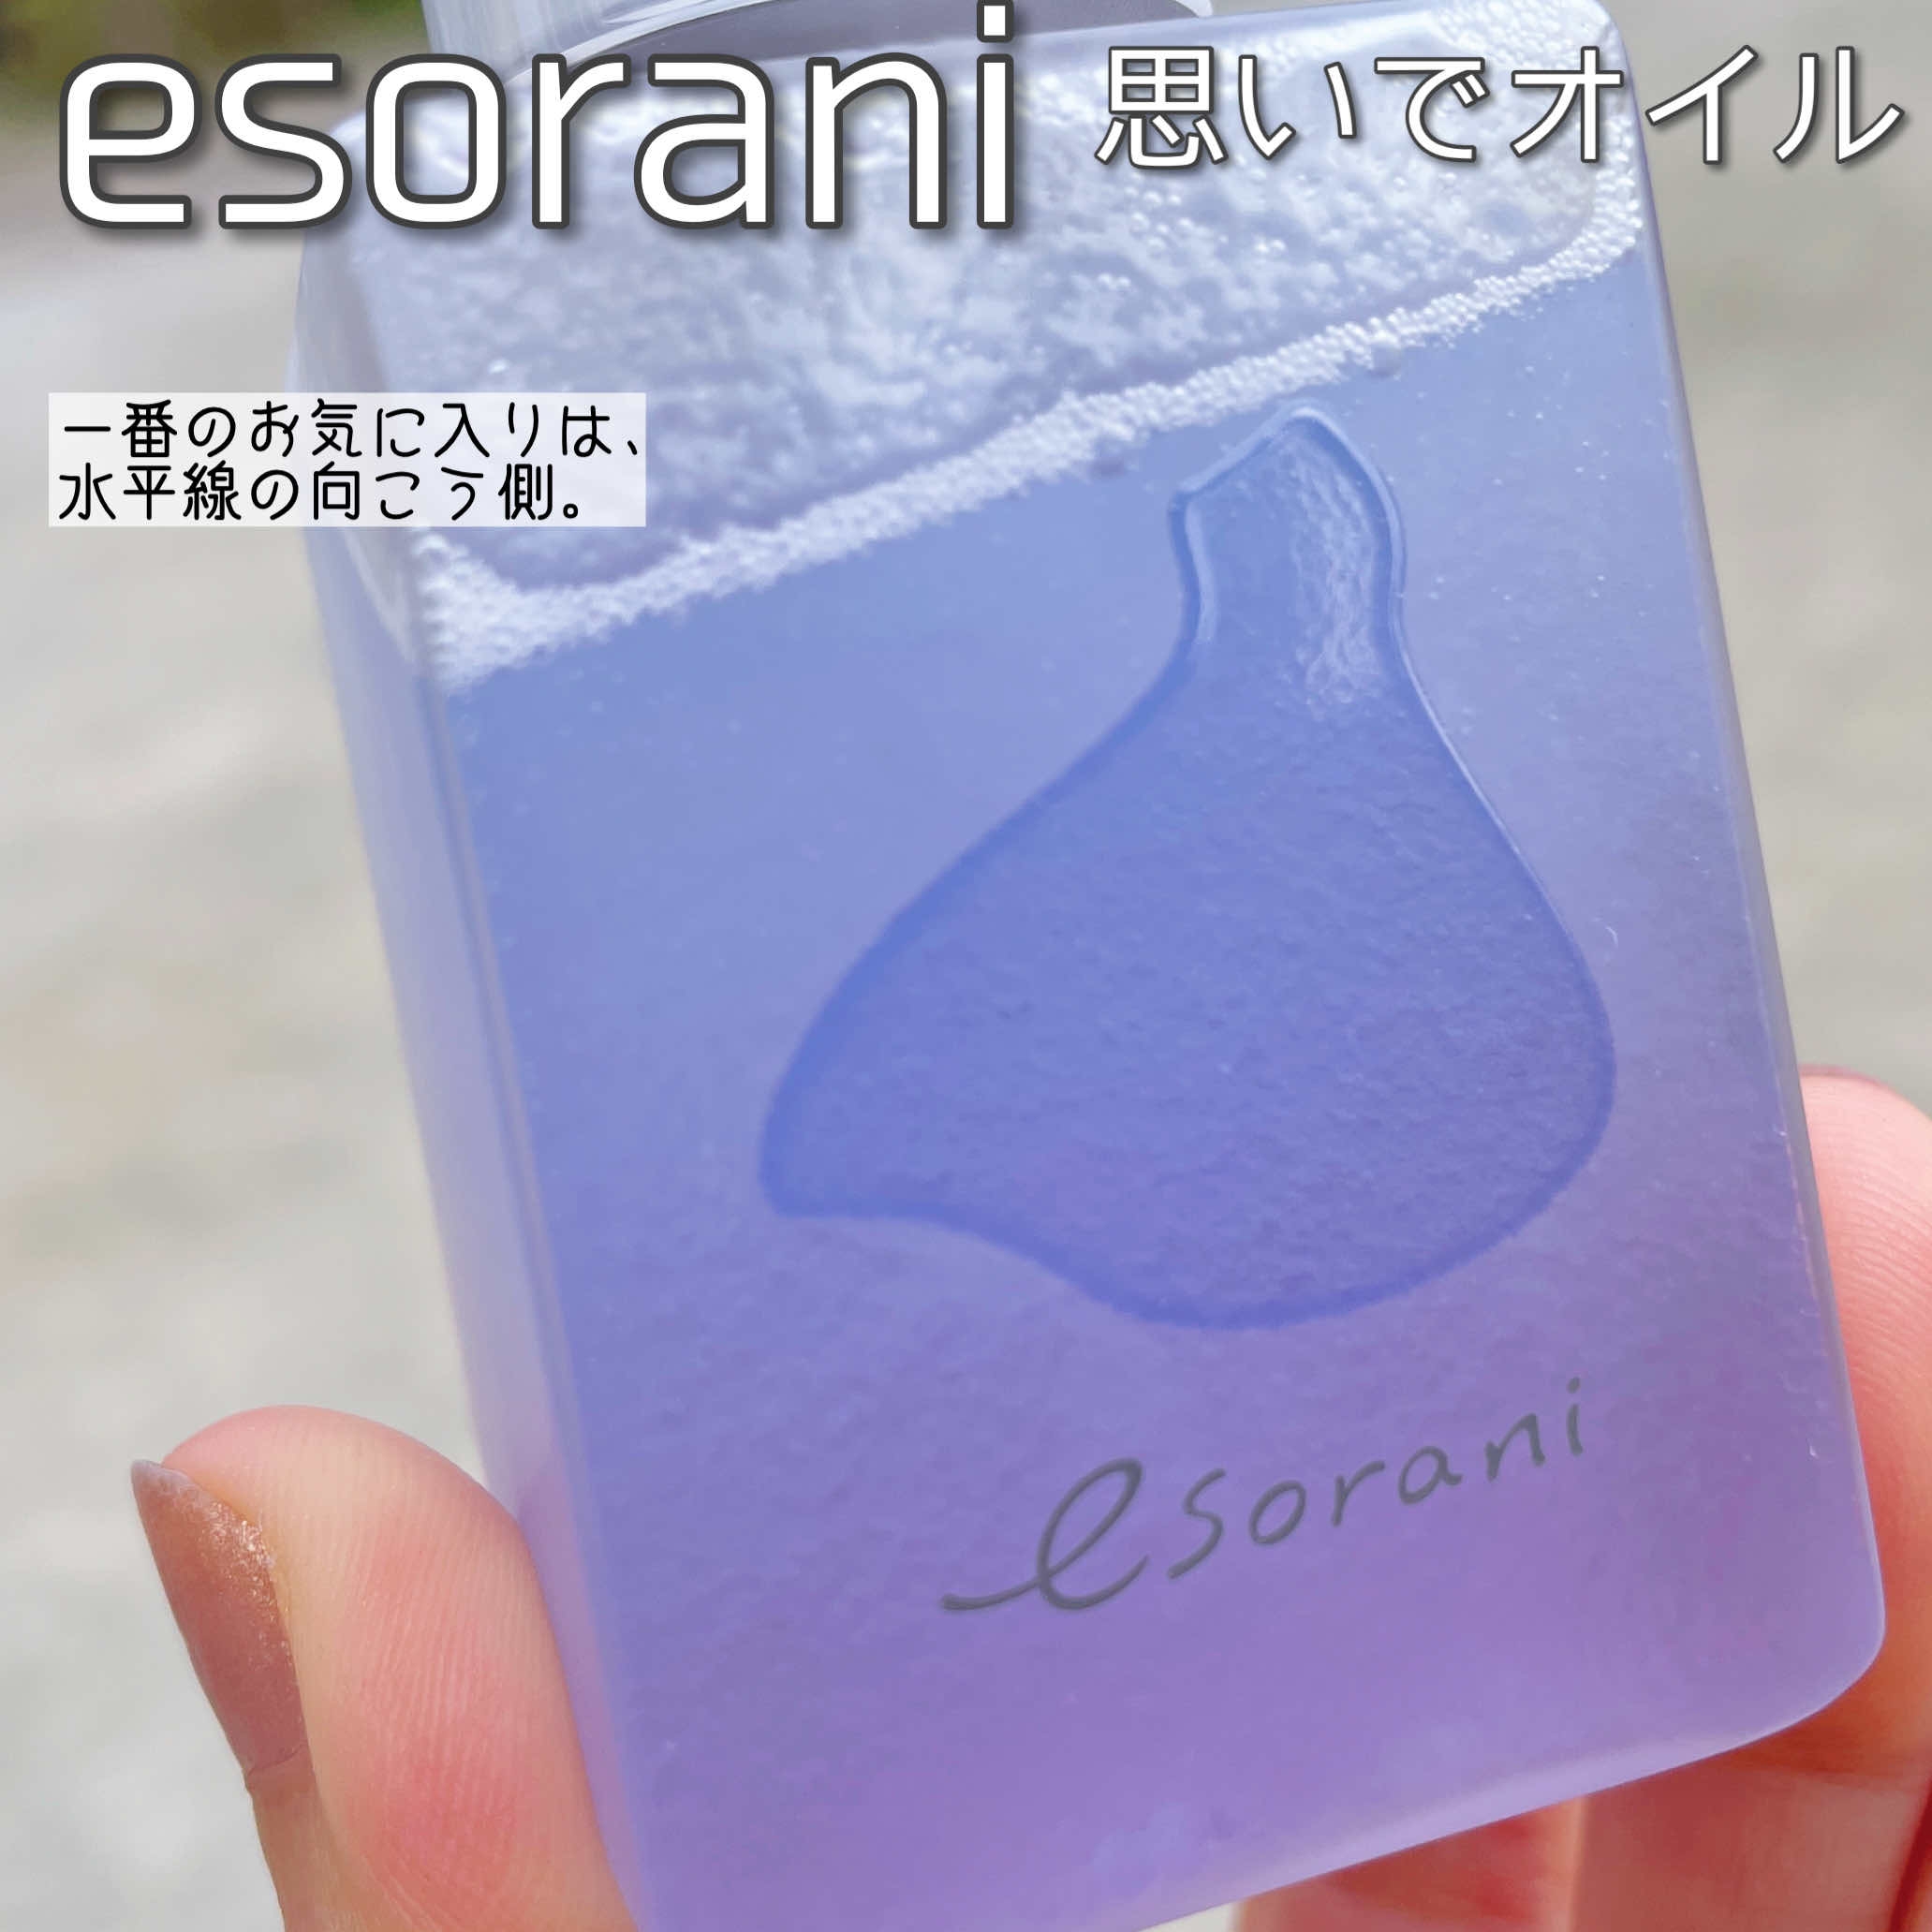 esorani(エソラニ) 思いでオイル 01の良い点・メリットに関するなゆさんの口コミ画像2